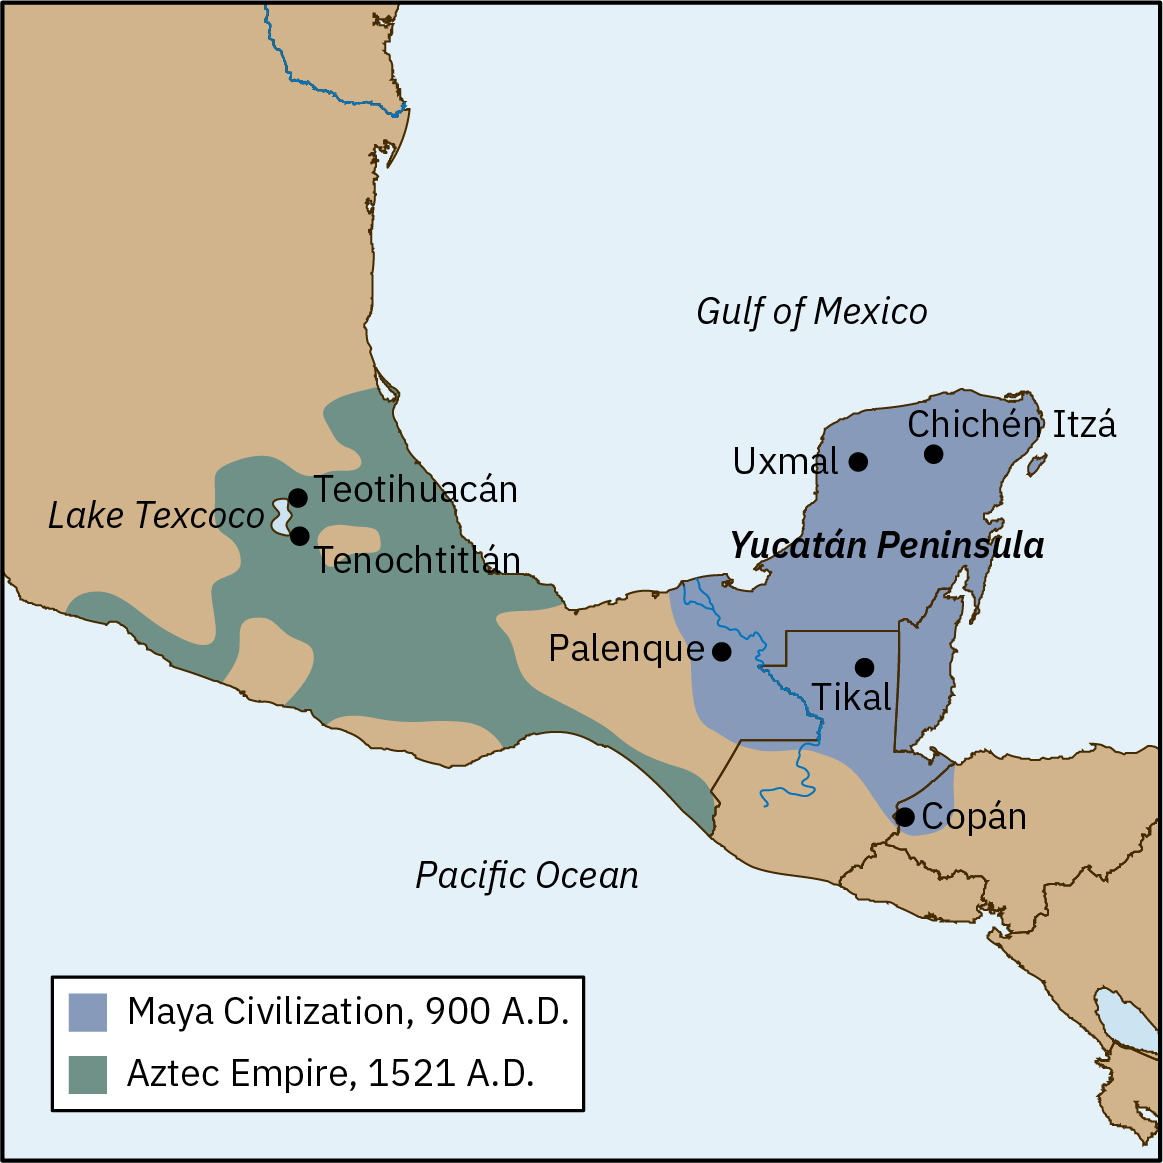 Mapa representando as regiões da Civilização Maia, por volta de 900 EC, e do Império Asteca, por volta de 1521 EC. A Civilização Maia ocupa toda a Península de Yucatán na América Central e inclui as cidades Copan, Tikal, Palenque, Uxmal e Chichen Itza. O Império Asteca ocupa uma parte da América Central ao norte da Península de Yucatán e inclui as cidades de Teotihuacan e Tenochtitlan, bem como o Lago Texcoco. As duas faixas cobrem áreas aproximadamente iguais.